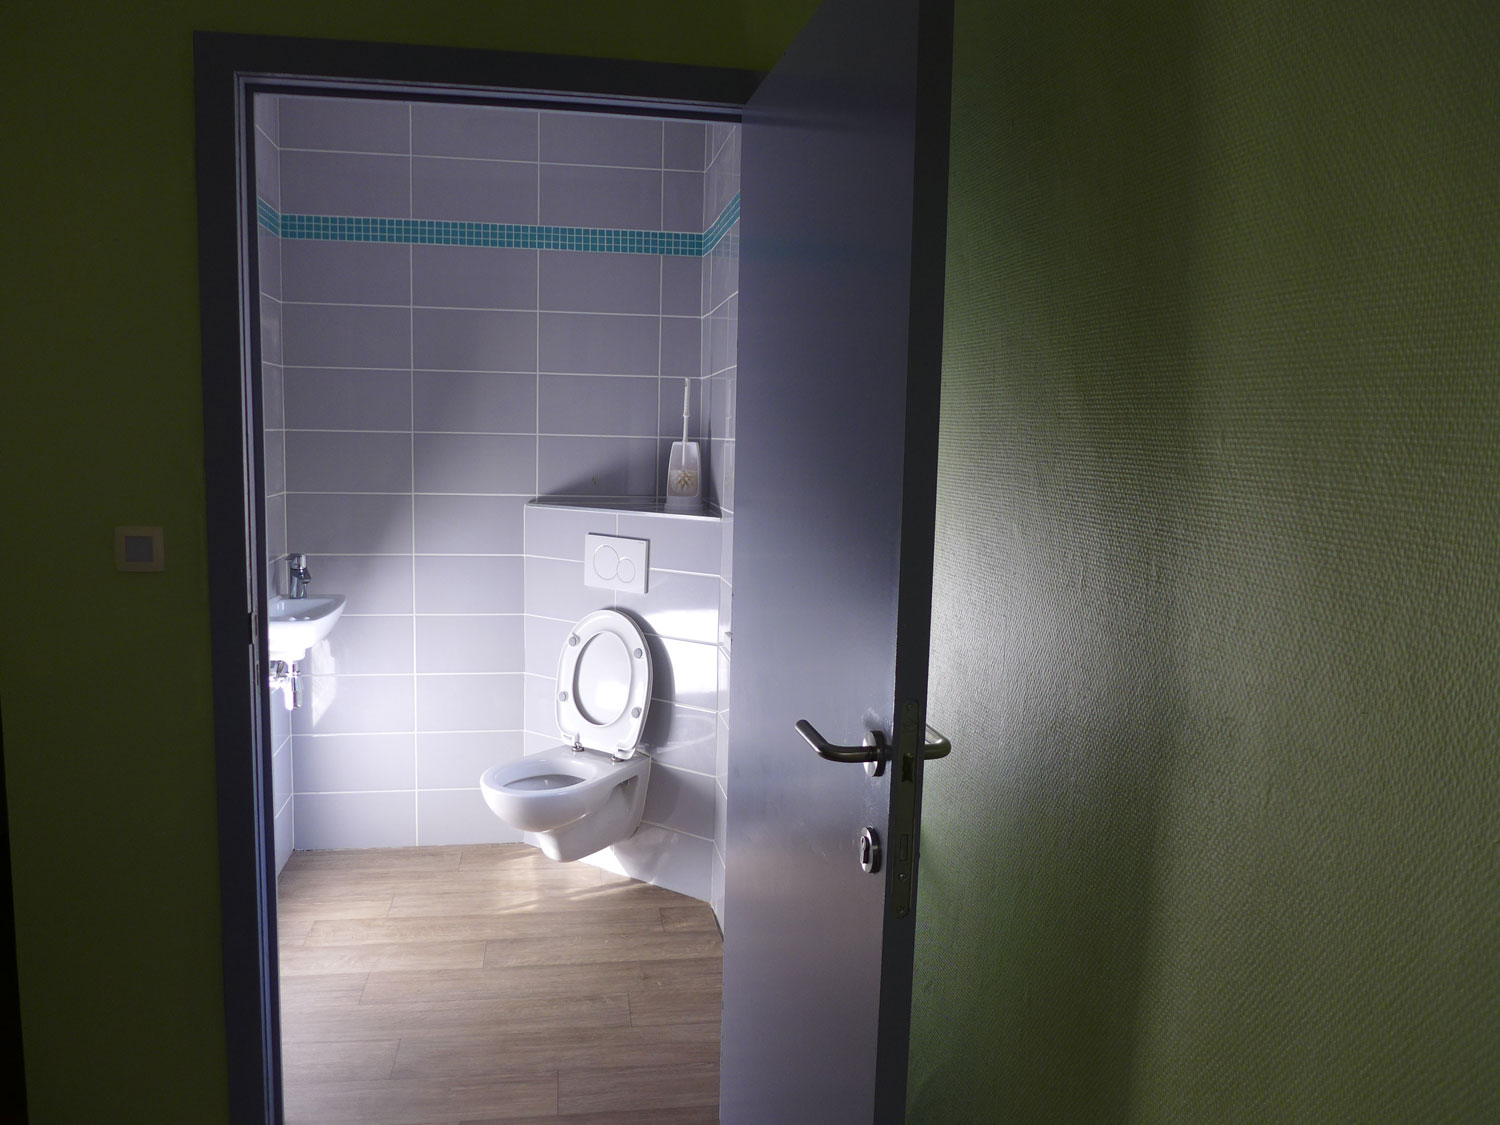 Les toilettes sont construites pour permettre aux résidents qui ont aussi des handicaps physiques d’y accéder © Globe Reporters